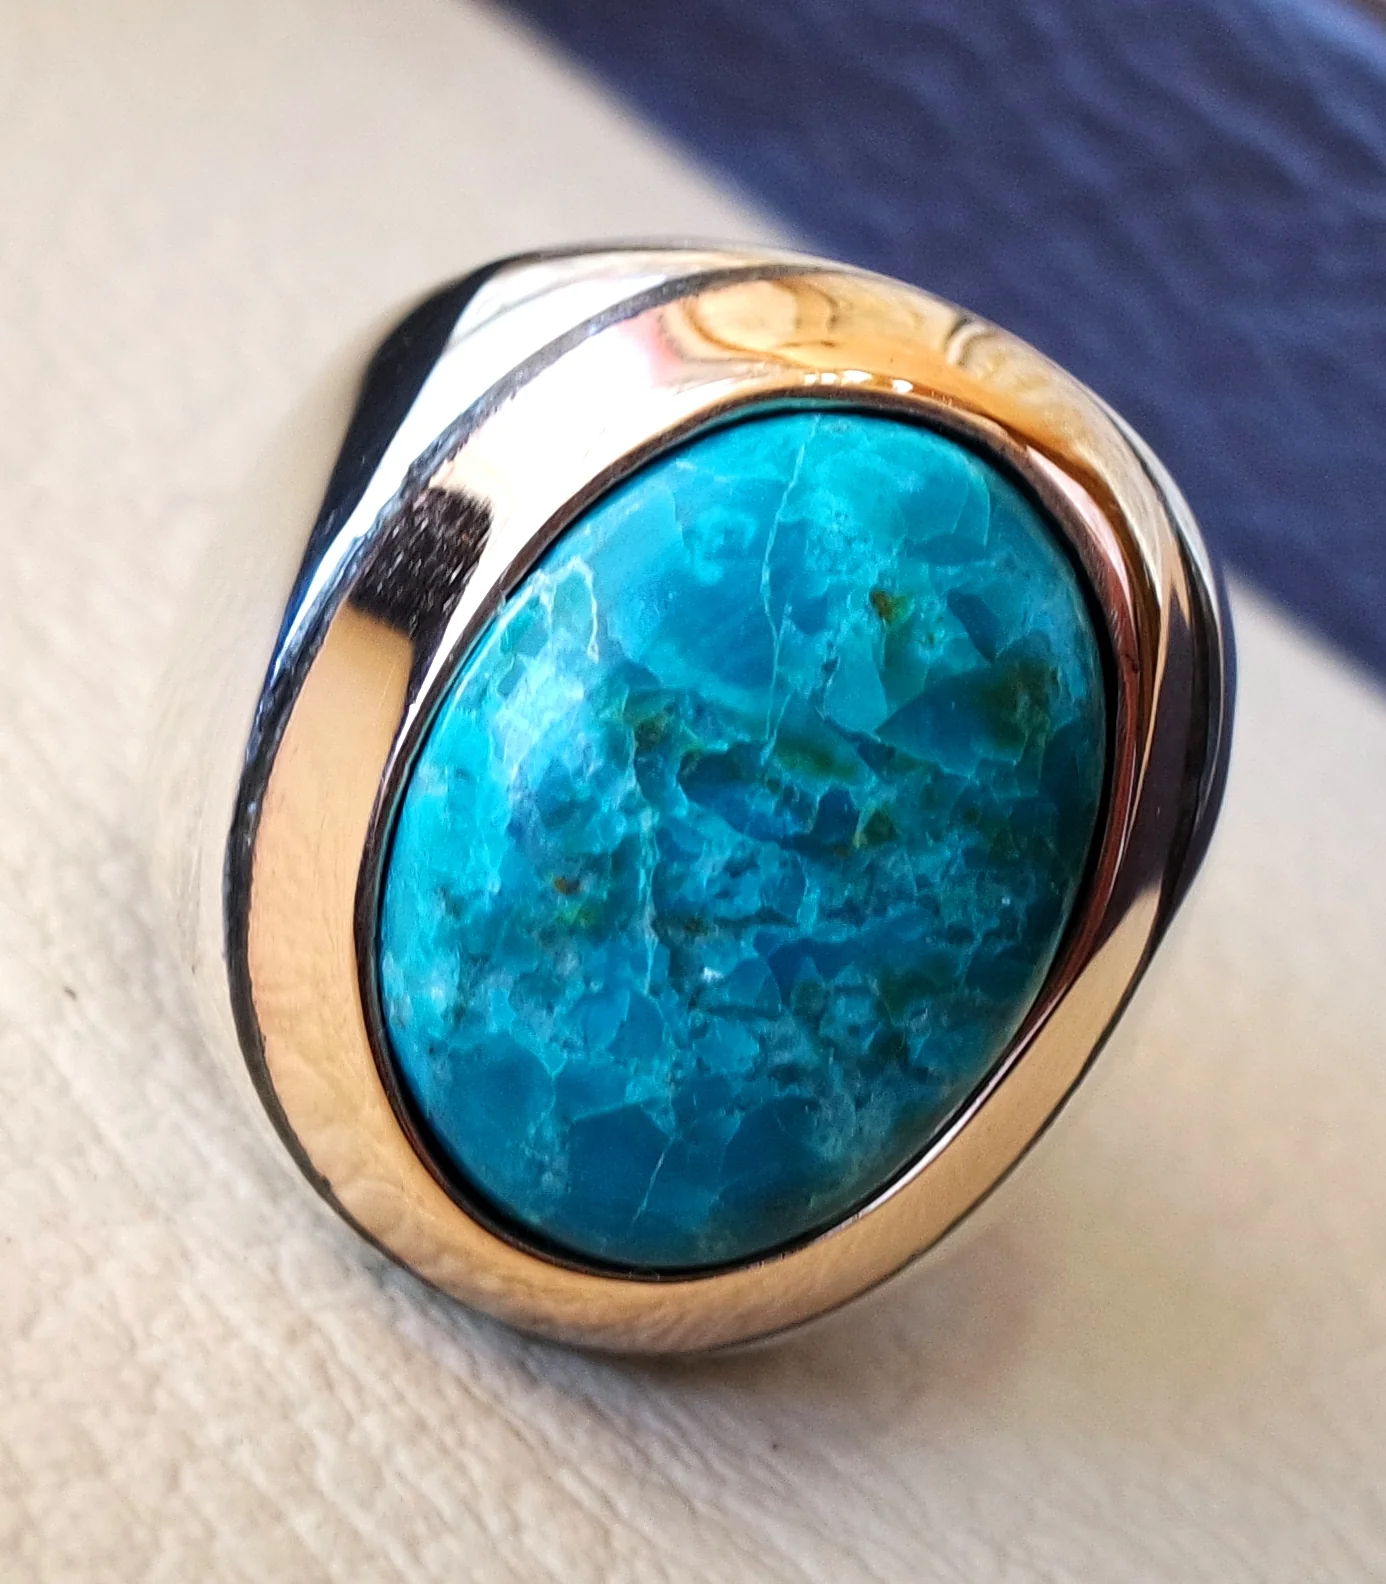 anillo hombre chryscolla piedra natural plata esterlina 925 y bronce oval cabochon semi precioso azul joya otomana estilo árabe todos los tamaños de joyería